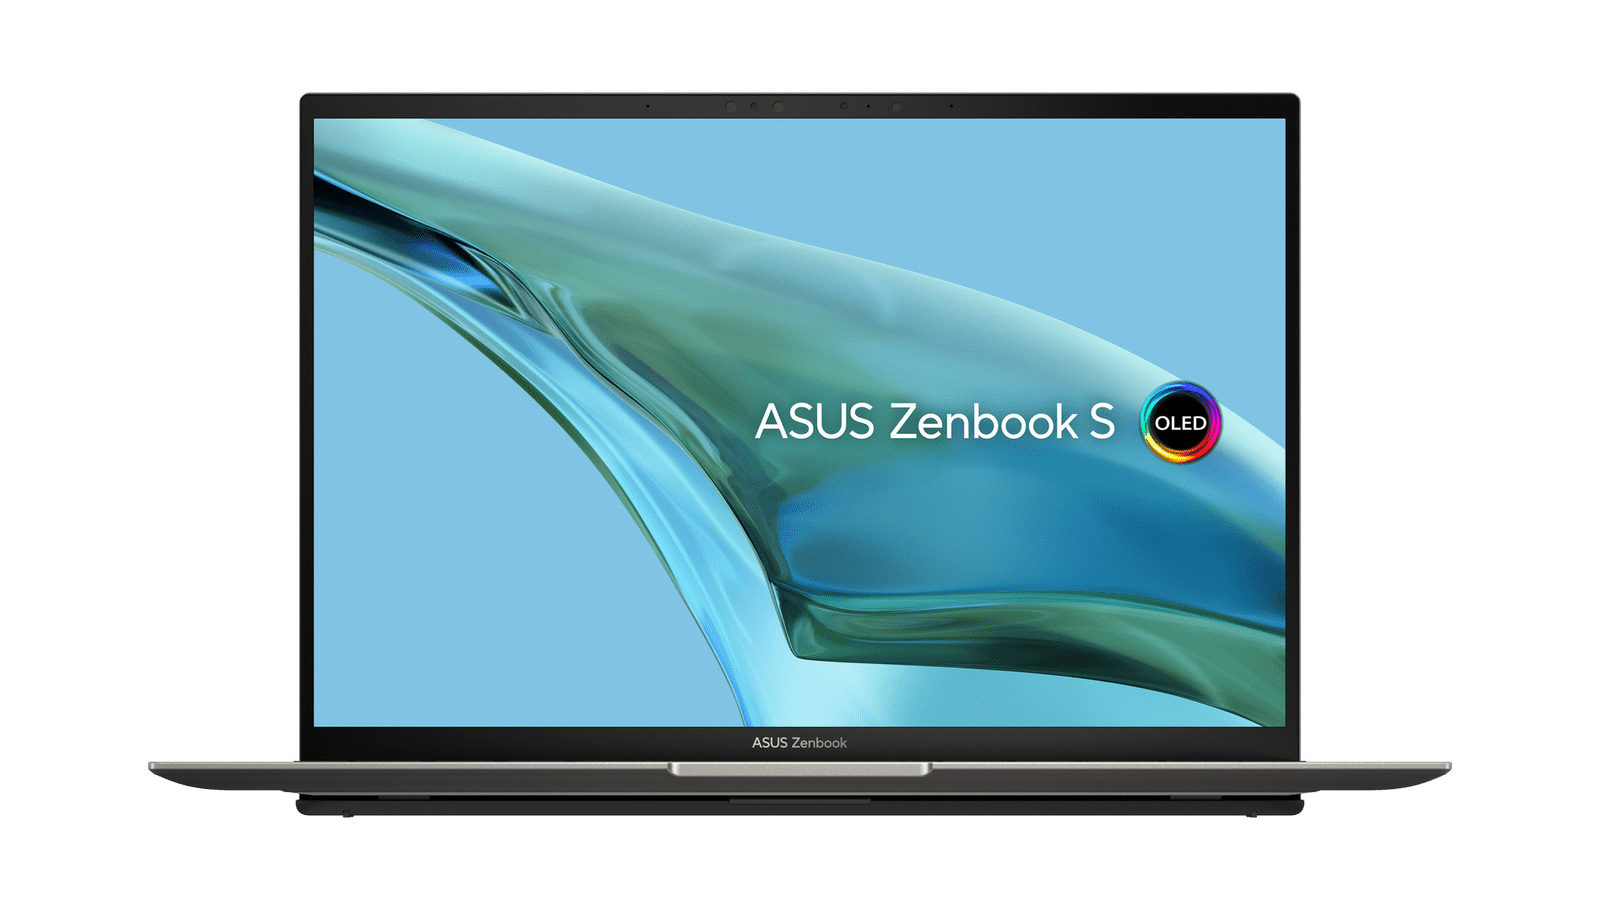 Zenbook S 13 OLED